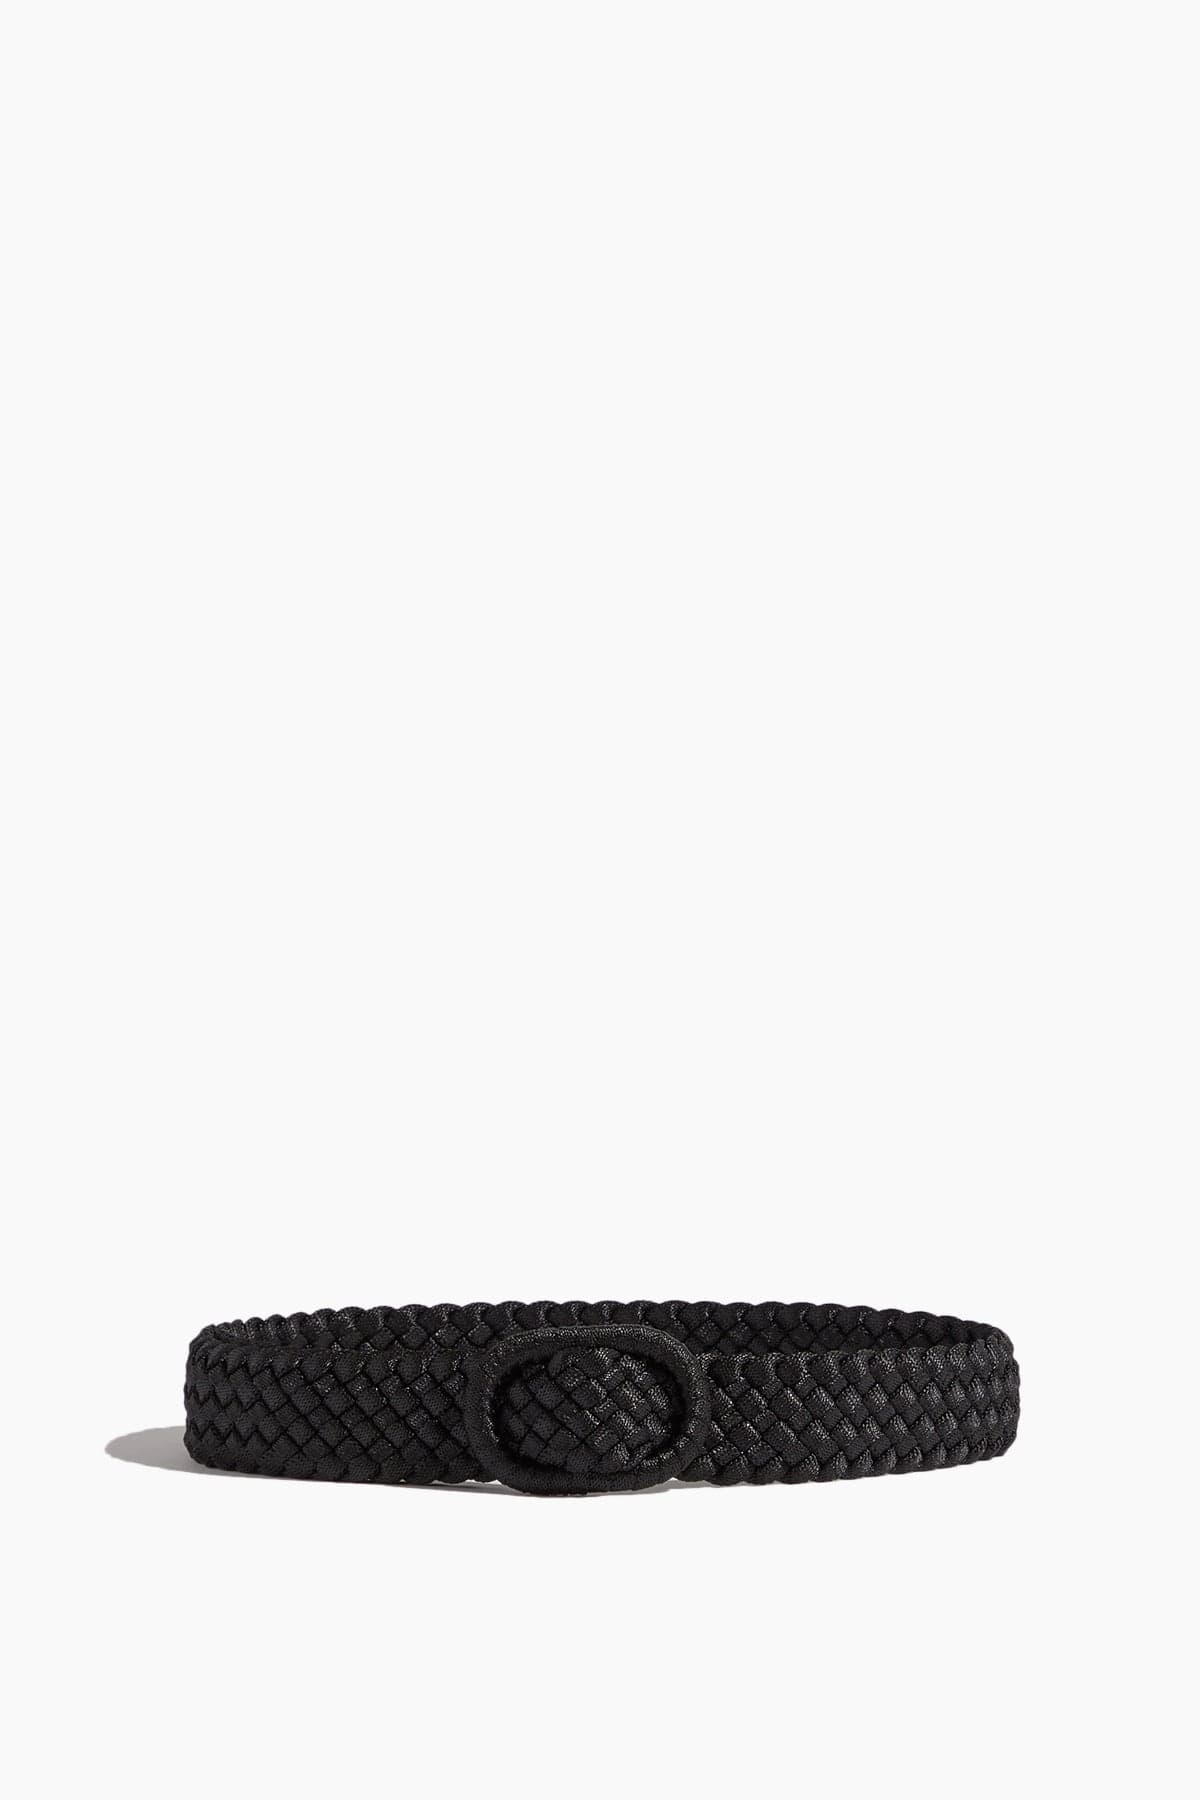 Toteme Belts Braided Belt in Black